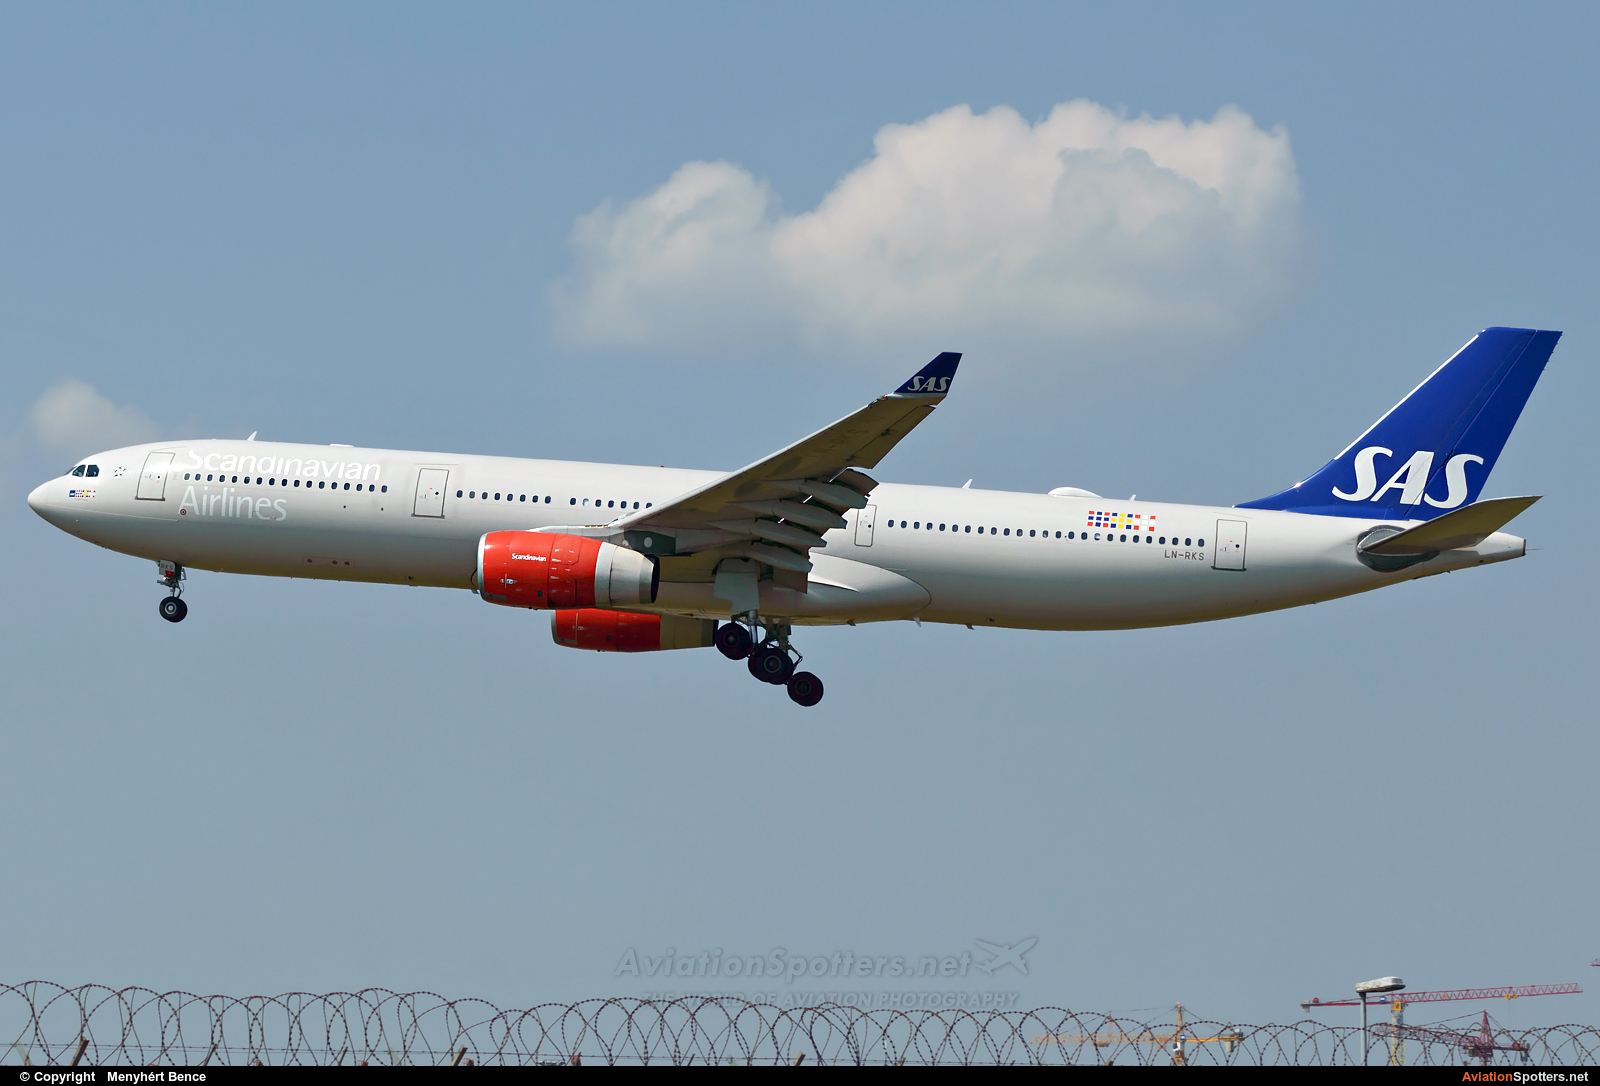 SAS - Scandinavian Airlines  -  A330-343  (LN-RKS) By Menyhért Bence (hadesdras91)